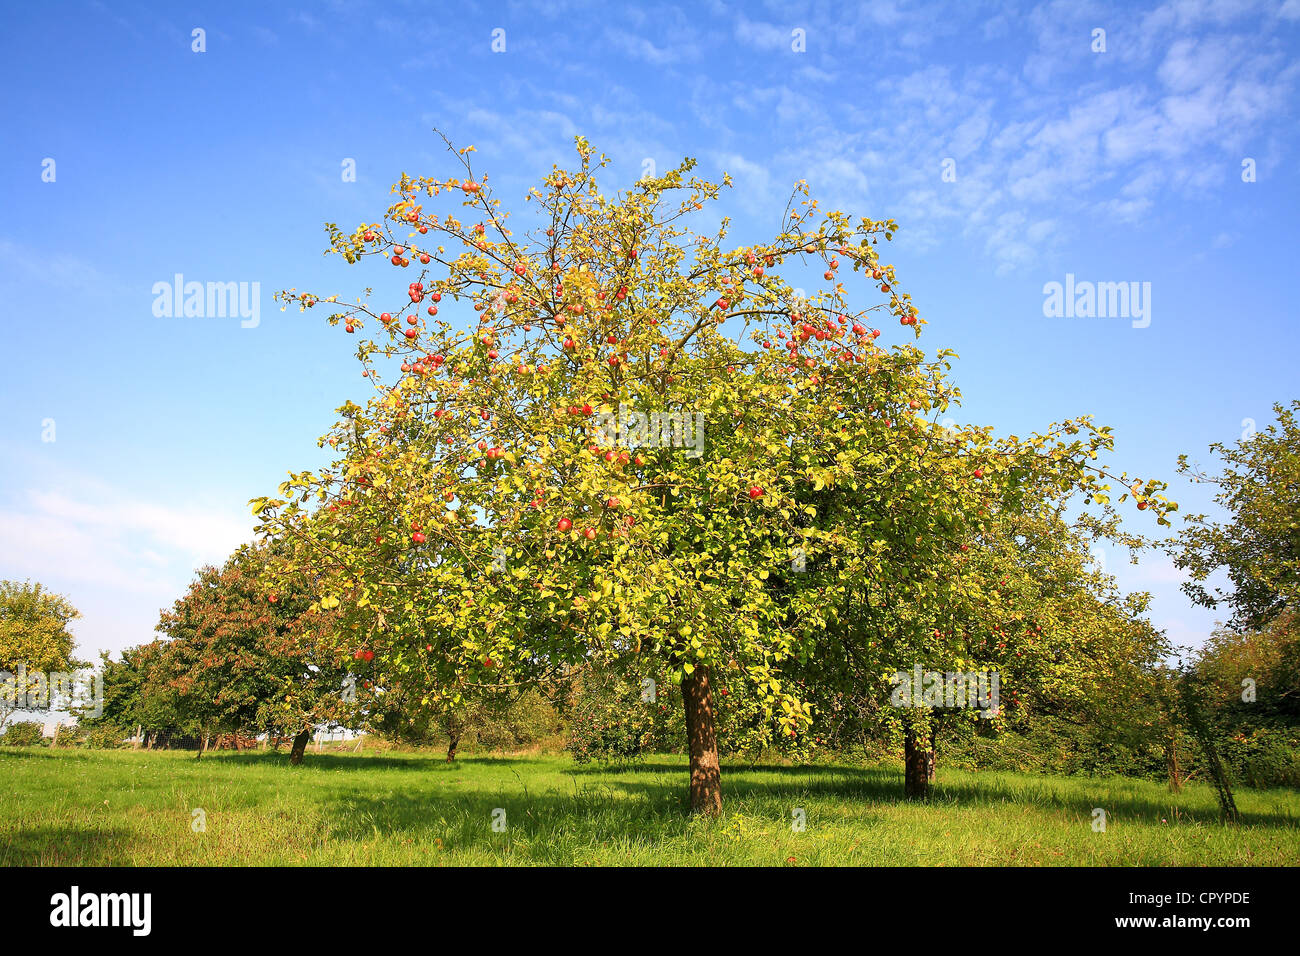 Prairie en automne avec quelques arbres fruitiers, tels que pommiers et poiriers Banque D'Images